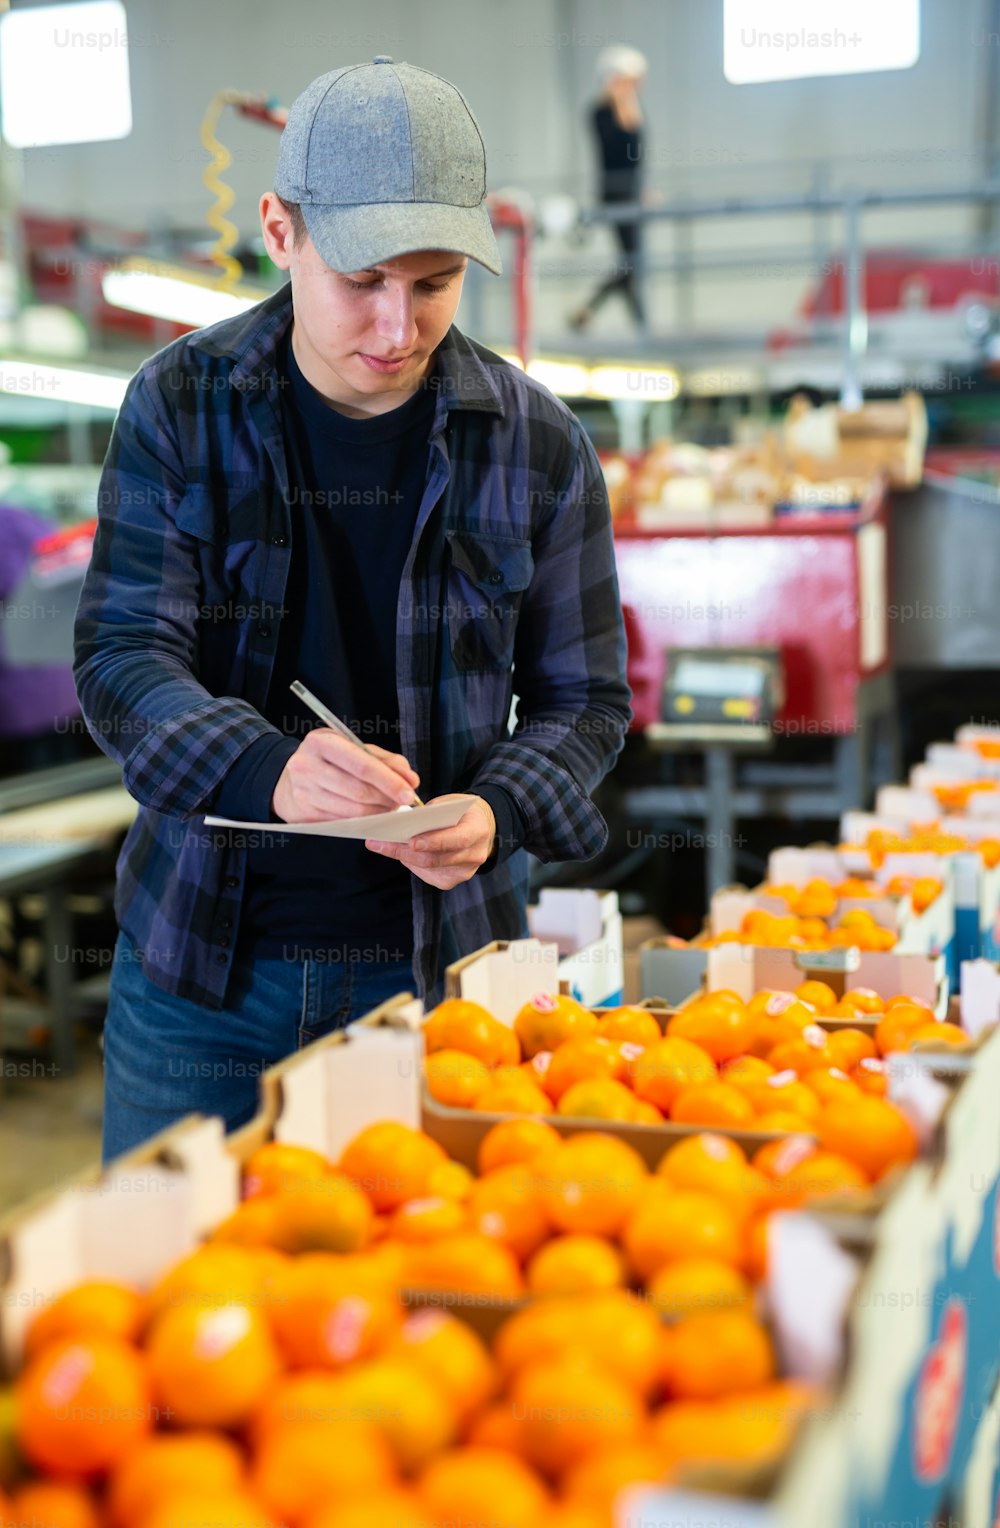 Diligente trabalhador positivo do sexo masculino verificando o trabalho de funcionários do sexo feminino envolvidos em tangerinas classificando proprietário em armazém de frutas. Foto vertical.